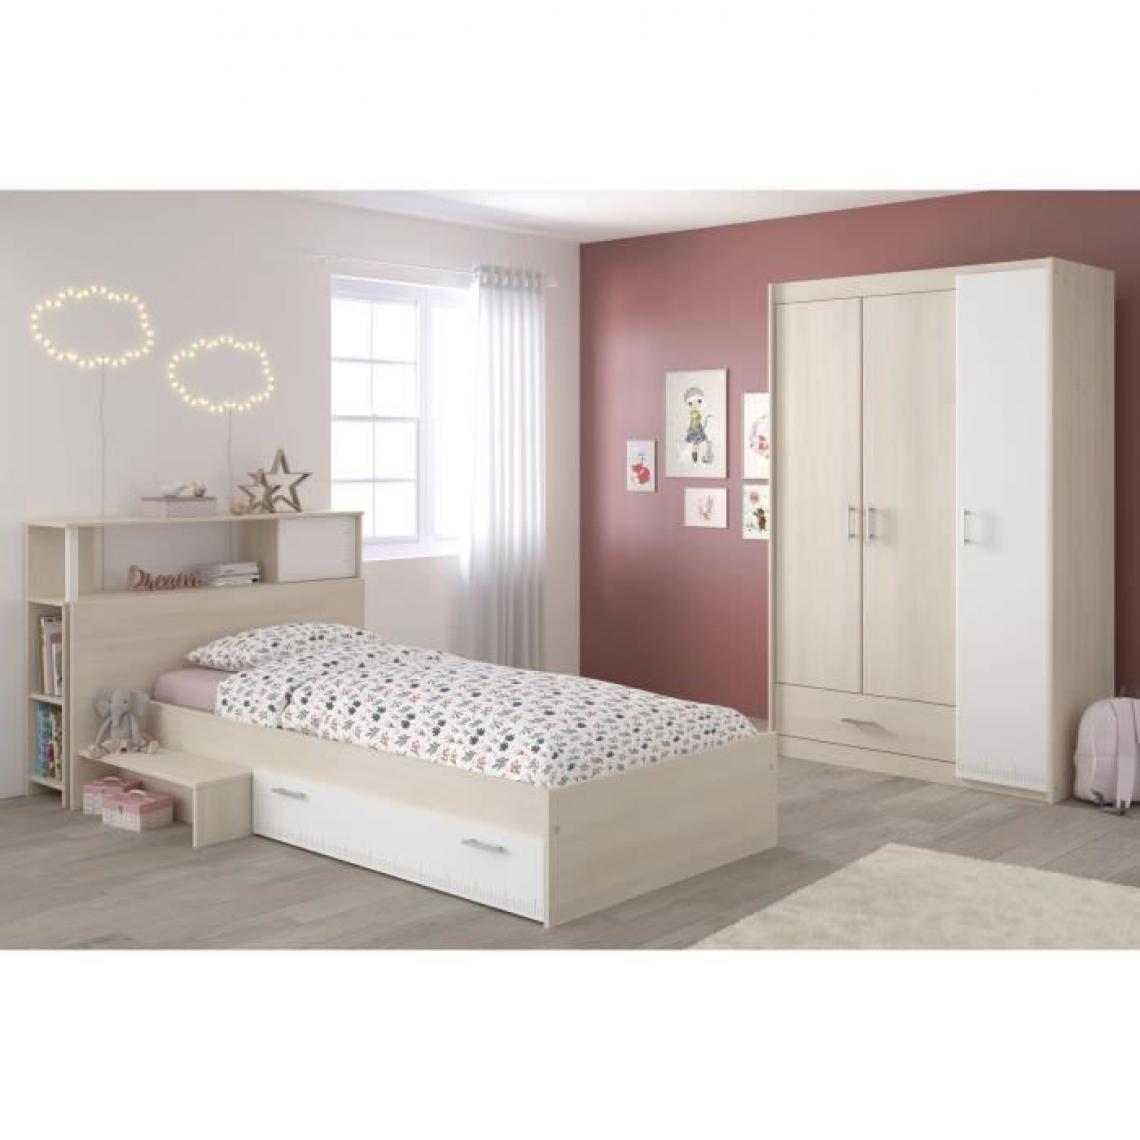 Sans Marque - CHARLEMAGNE Chambre enfant complete - Tete de lit + lit + armoire - Style contemporain - Decor acacia clair et blanc - Objets déco